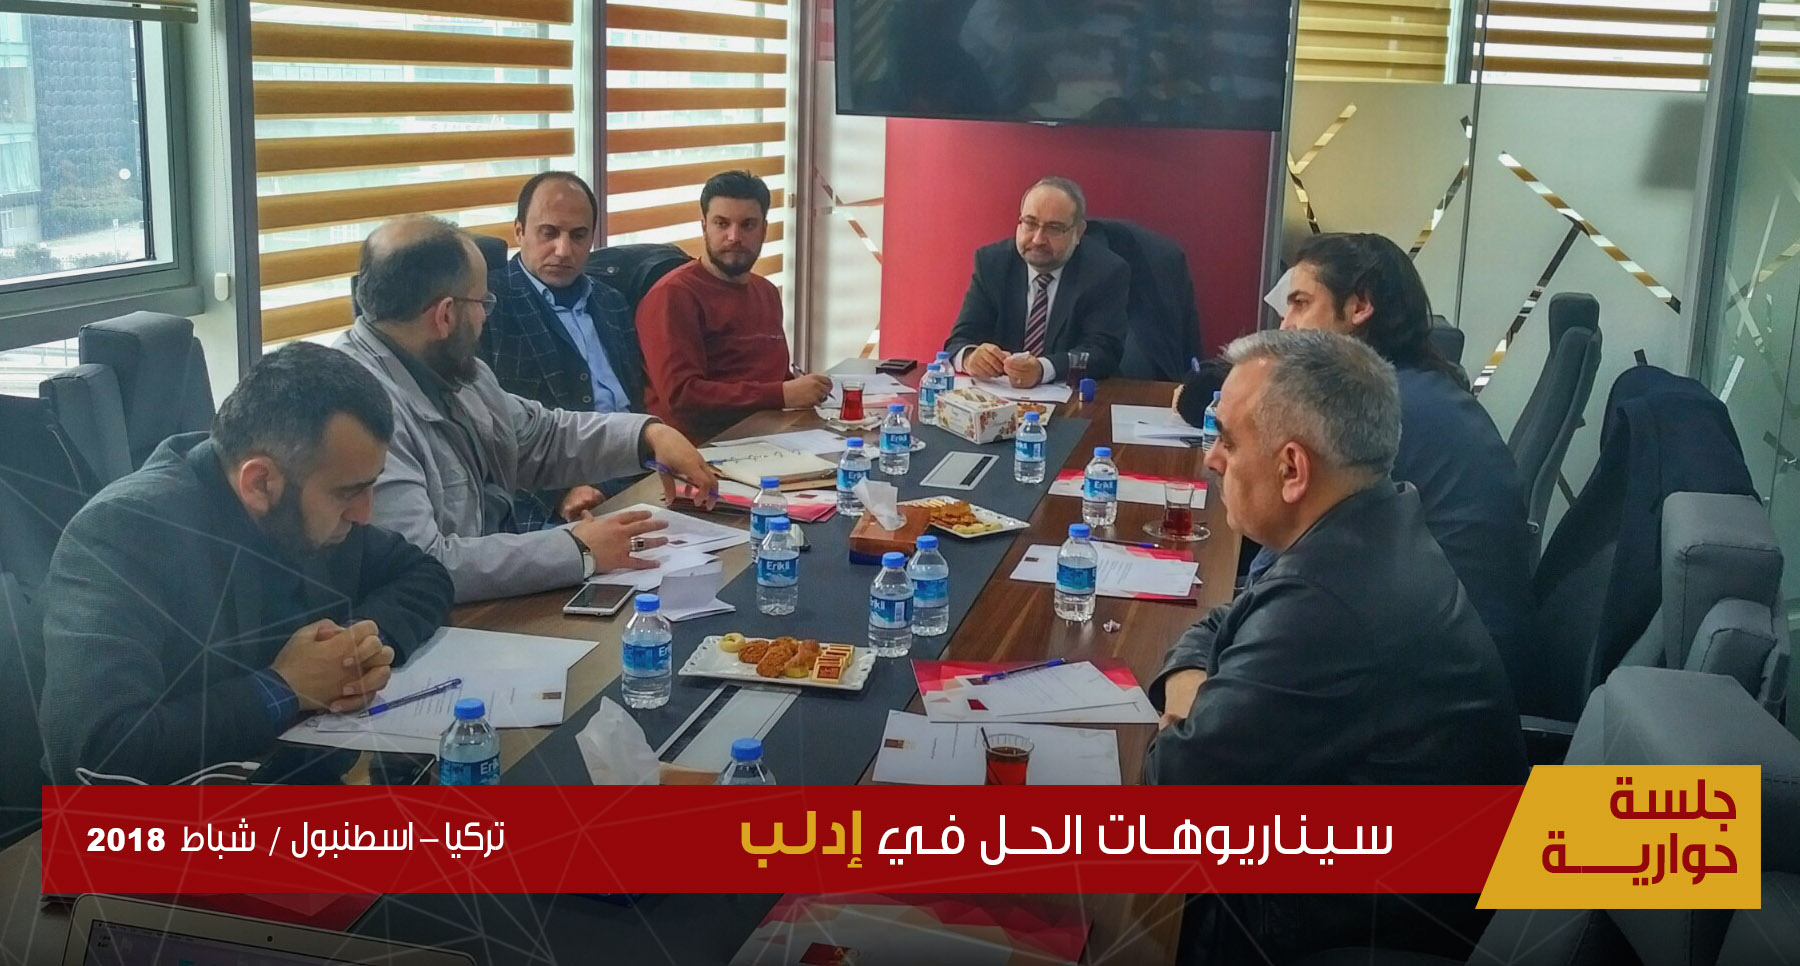 جلسة حوارية "سيناريوهات الحل في إدلب"